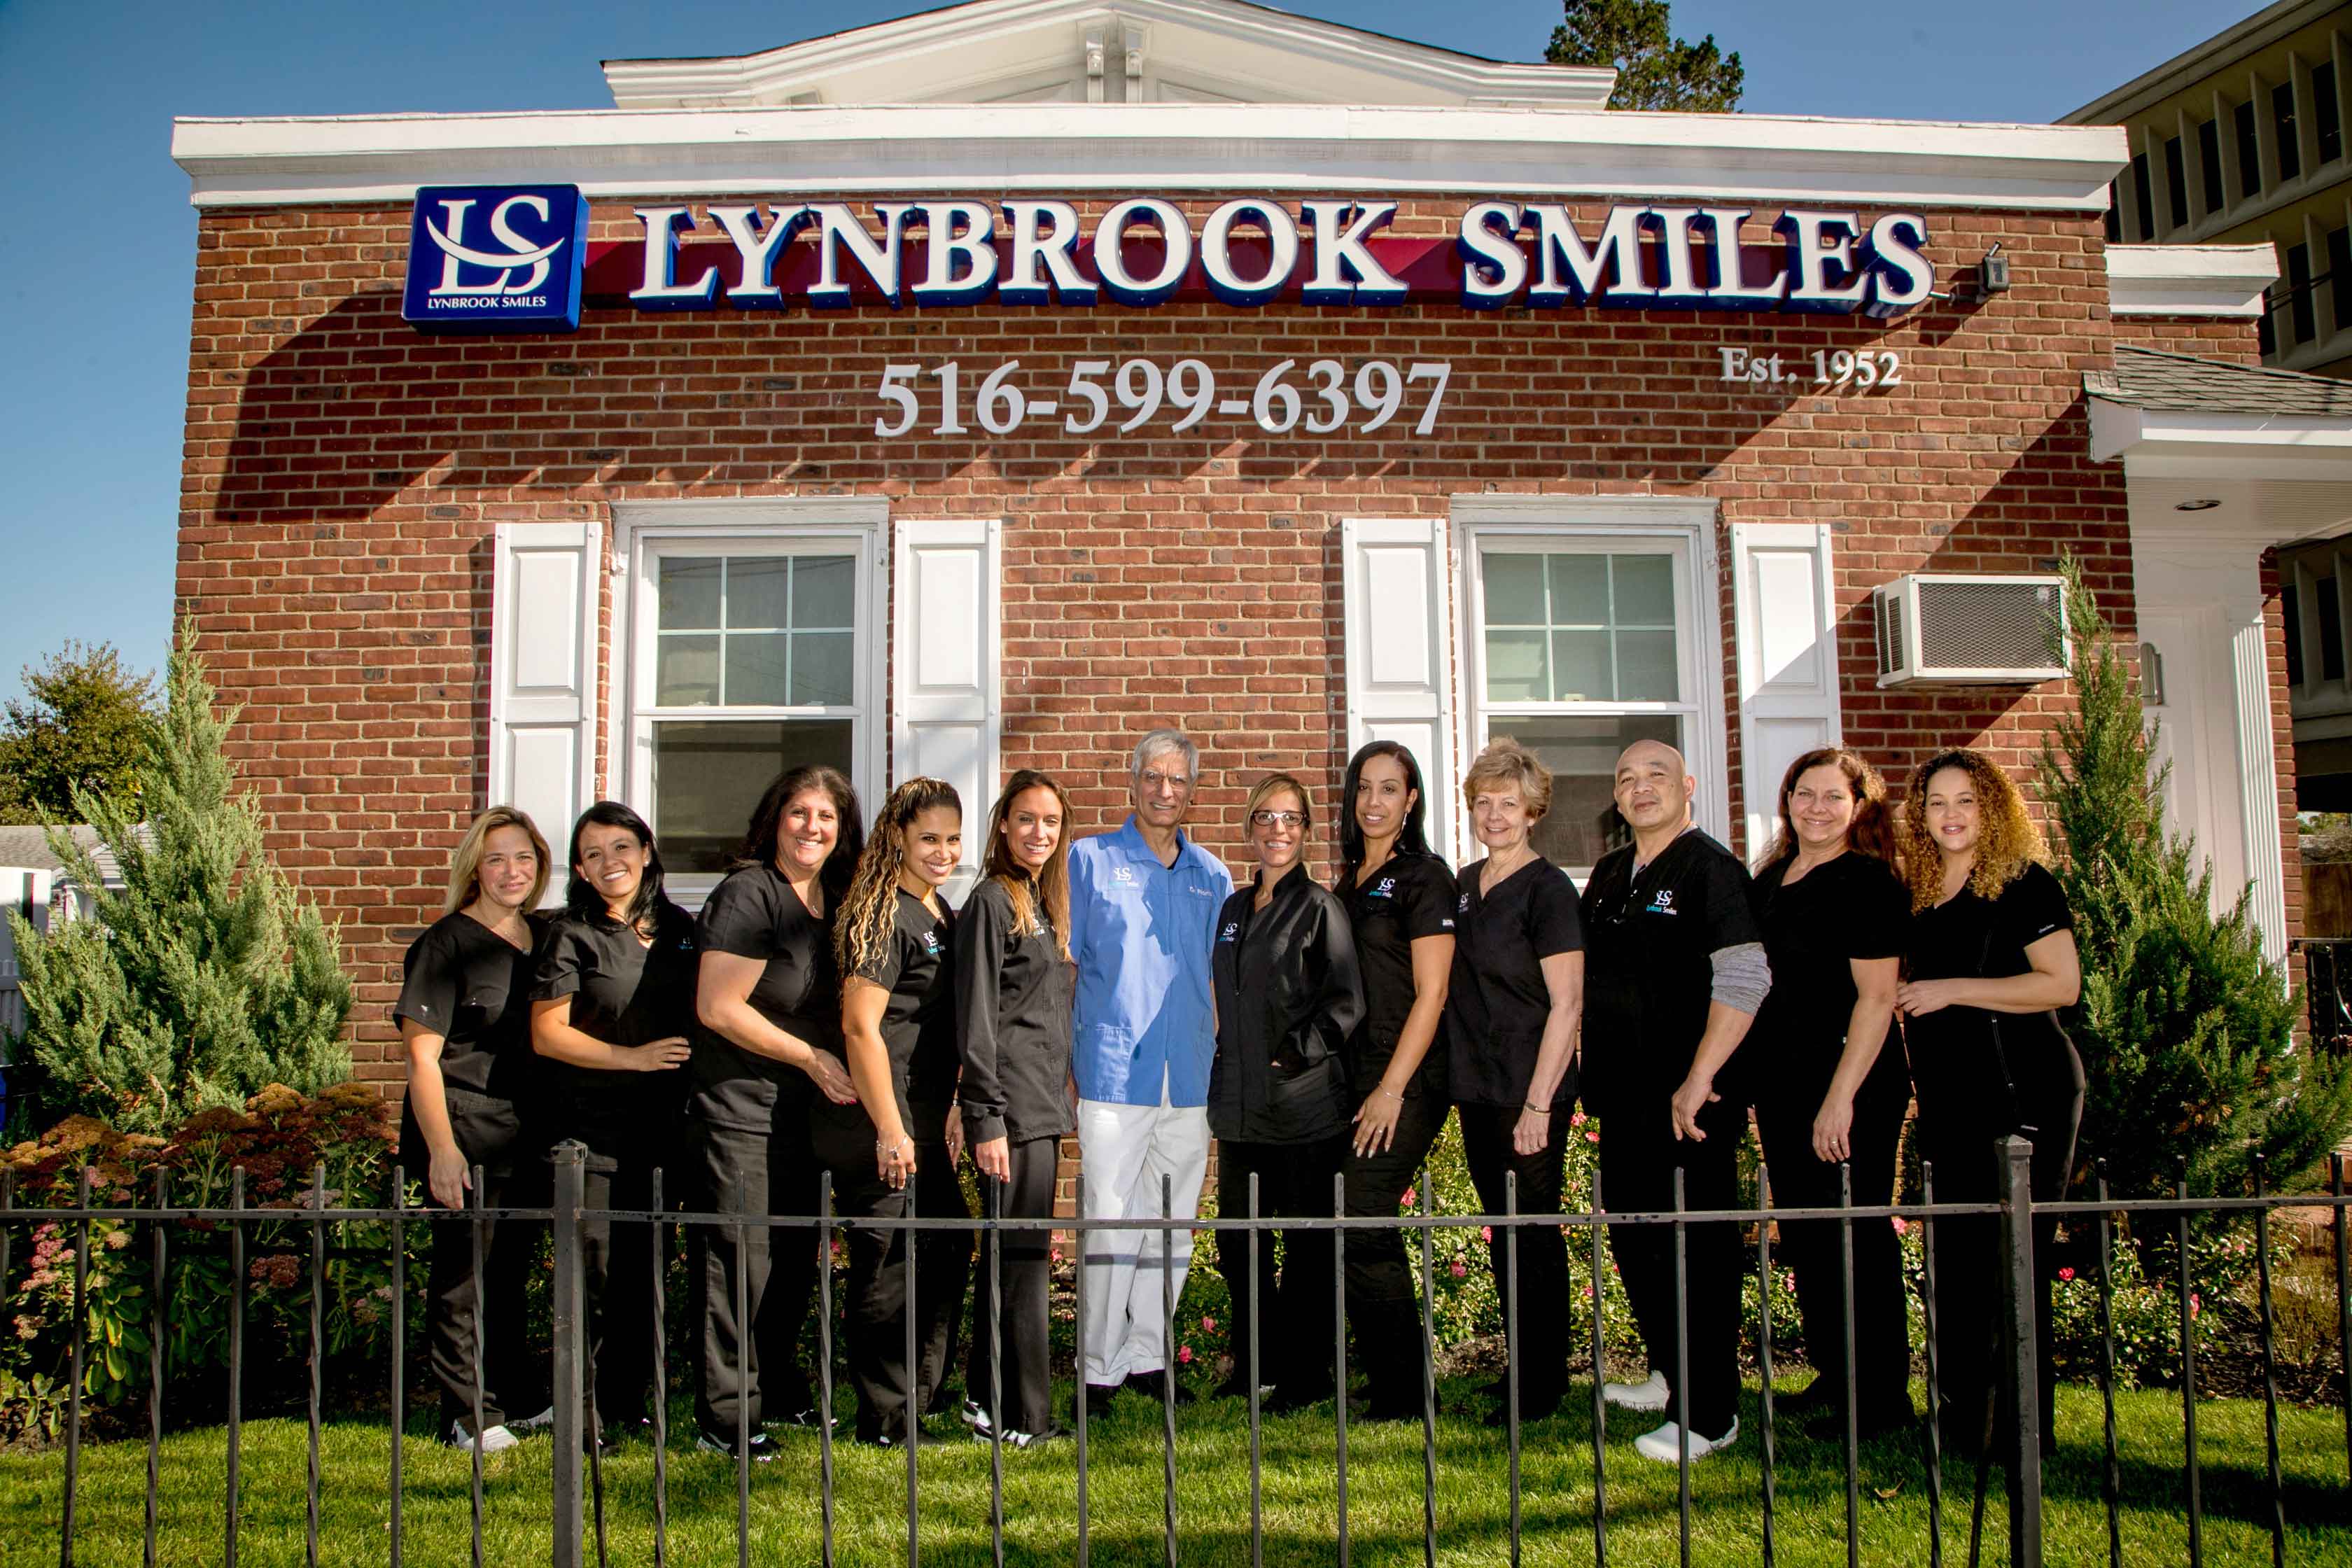 Lynbrook Smiles